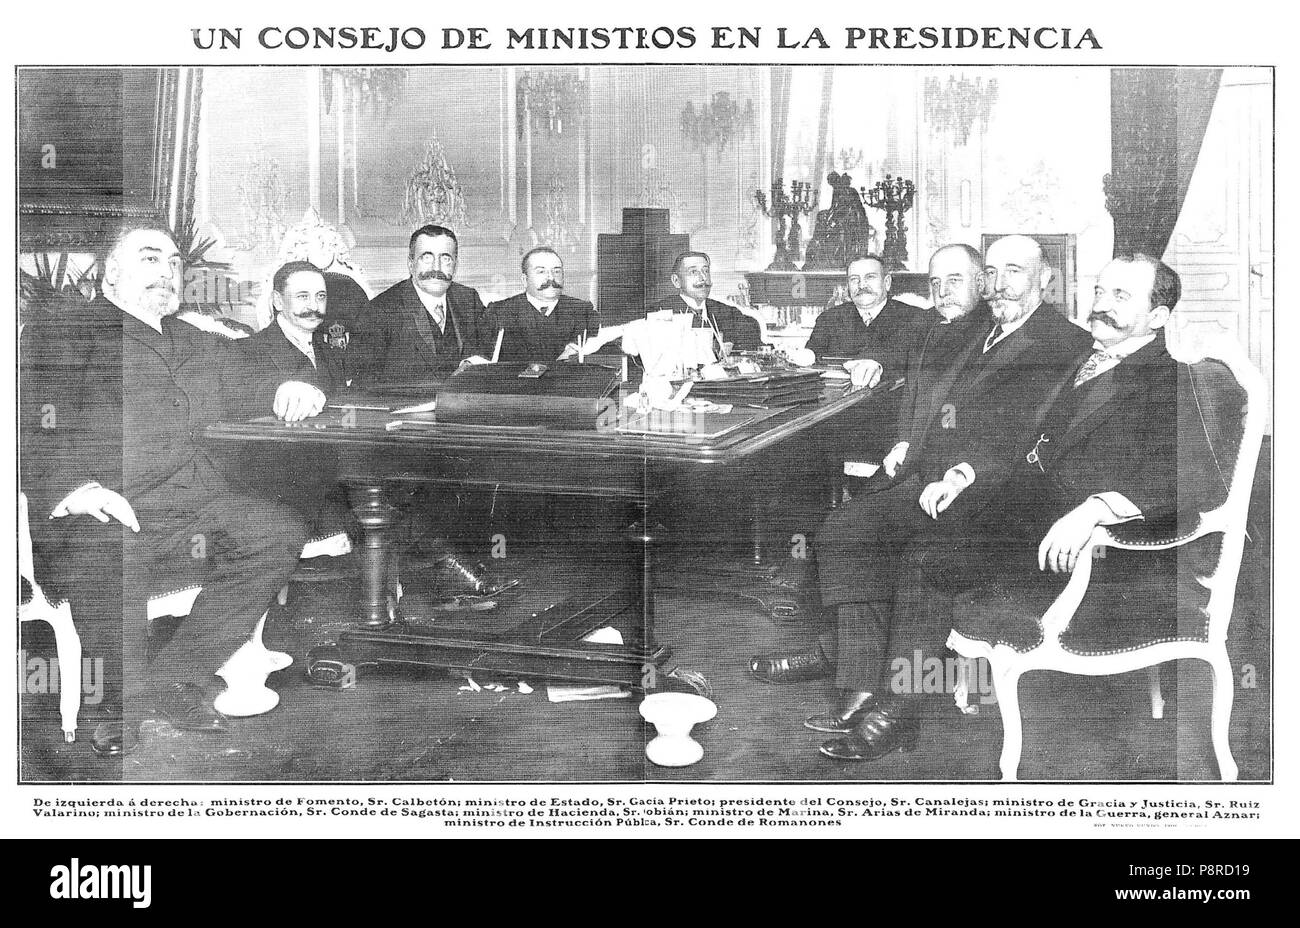 566 Un Consejo de Ministros de la presidencia, de Campúa, en Nuevo Mundo, 17-03-1910 Stockfoto